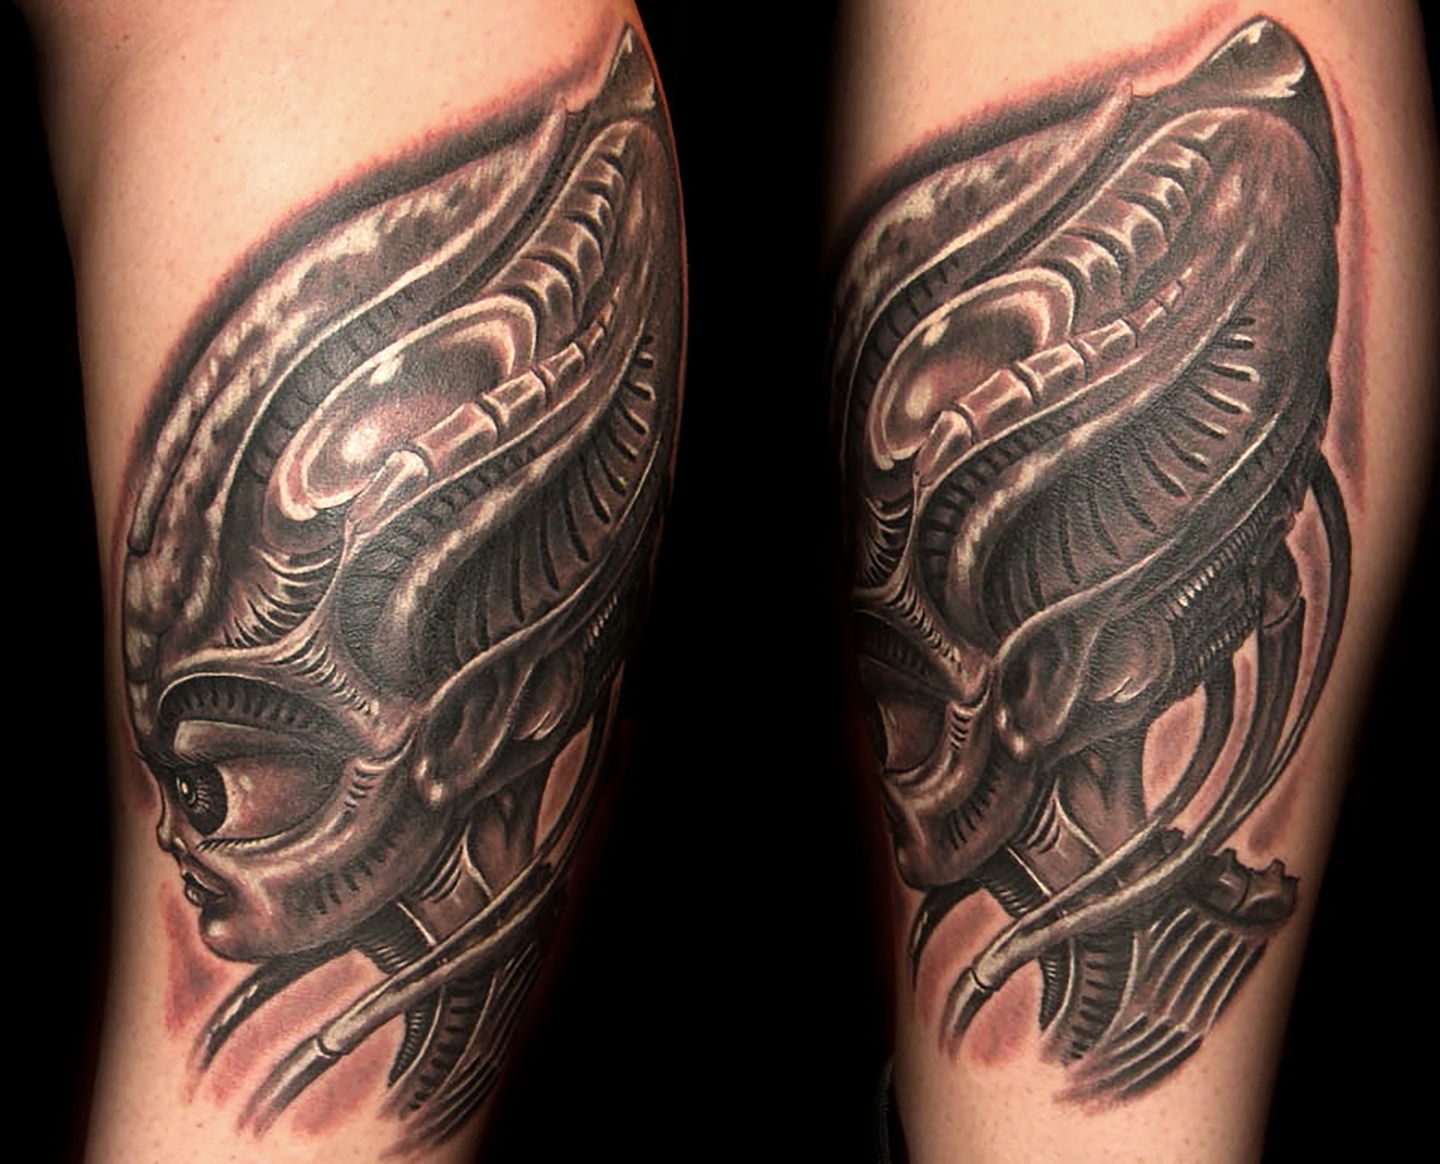 Las-vegas-tattoo-artist_joe-riley_biomech-alien-tattoo